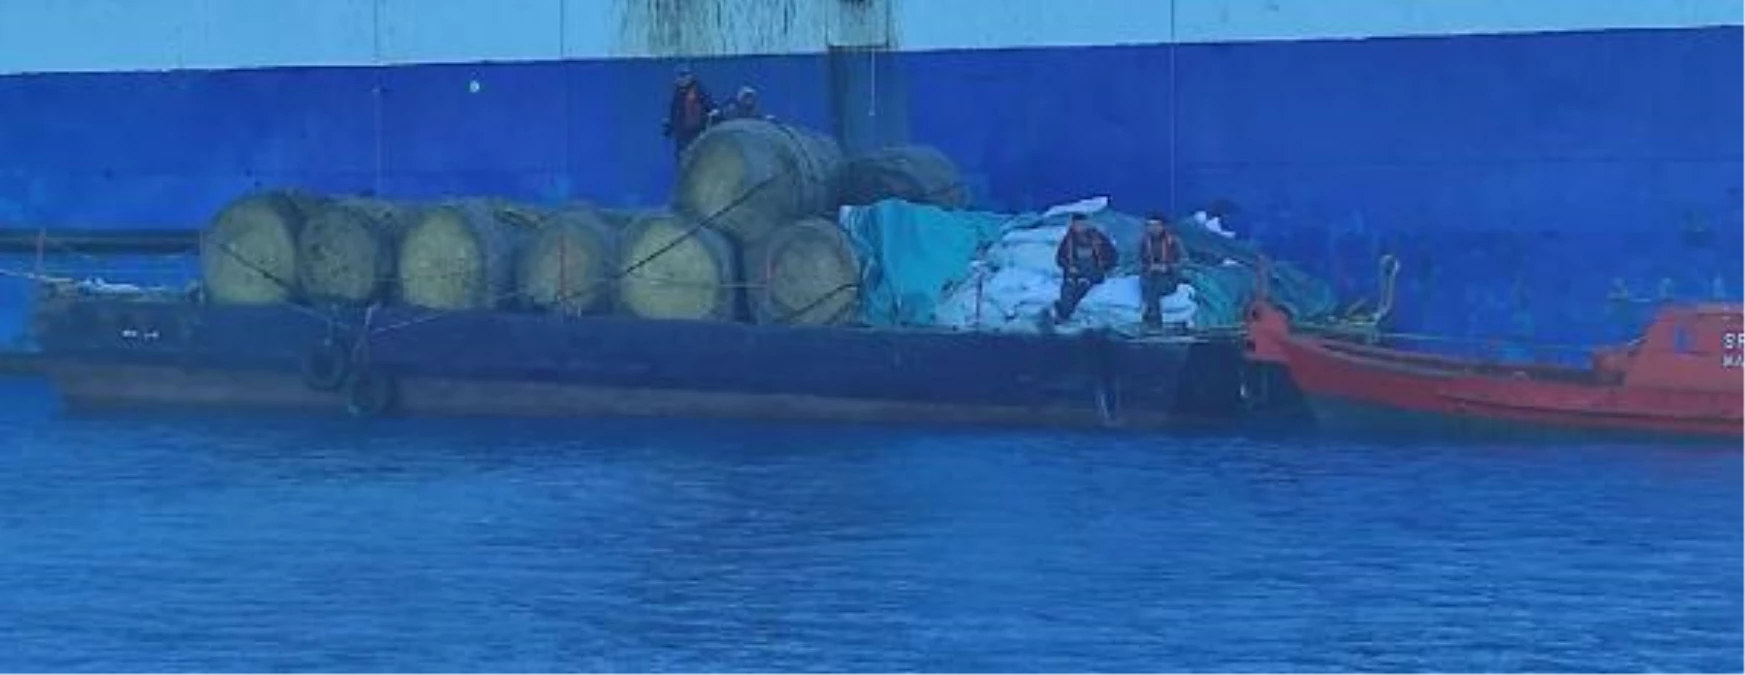 Πλοίο με σημαία του Κονγκό φορτωμένο με άρρωστα ζώα προκαλεί πανικό στην Κύπρο